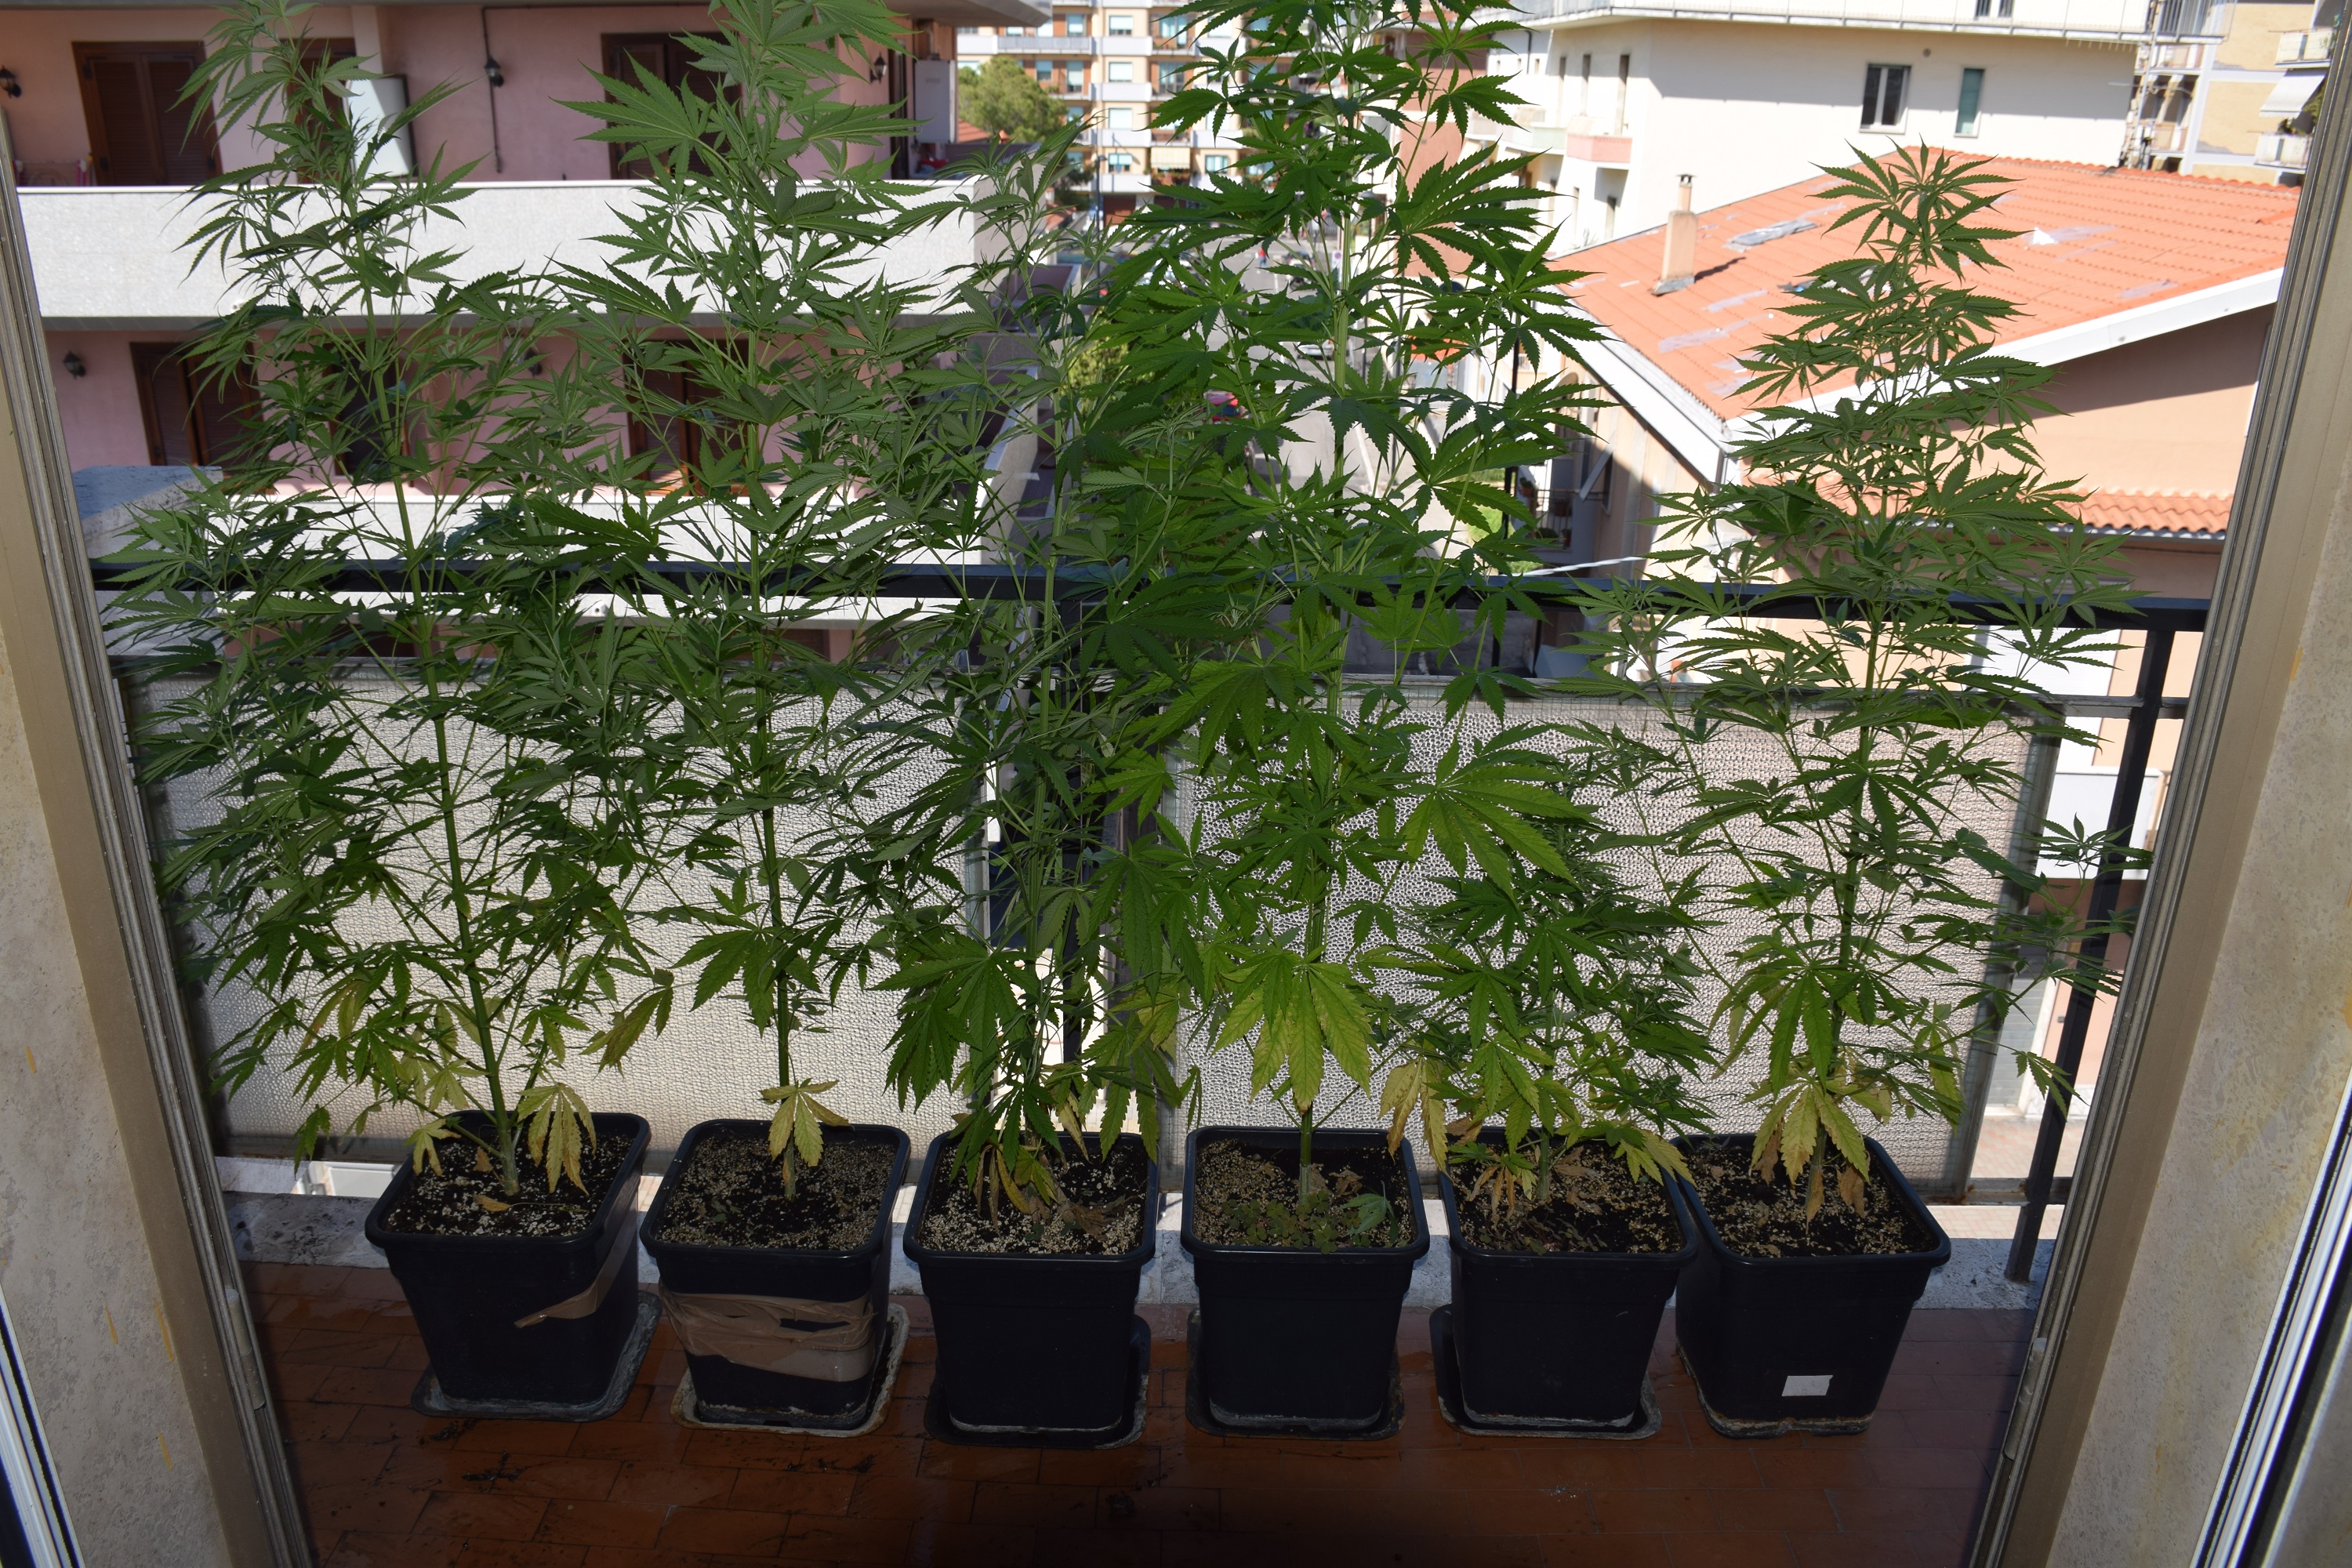 6 piante di marijuana sul balcone di casa. Denunciato per detenzione ai fini di spaccio 